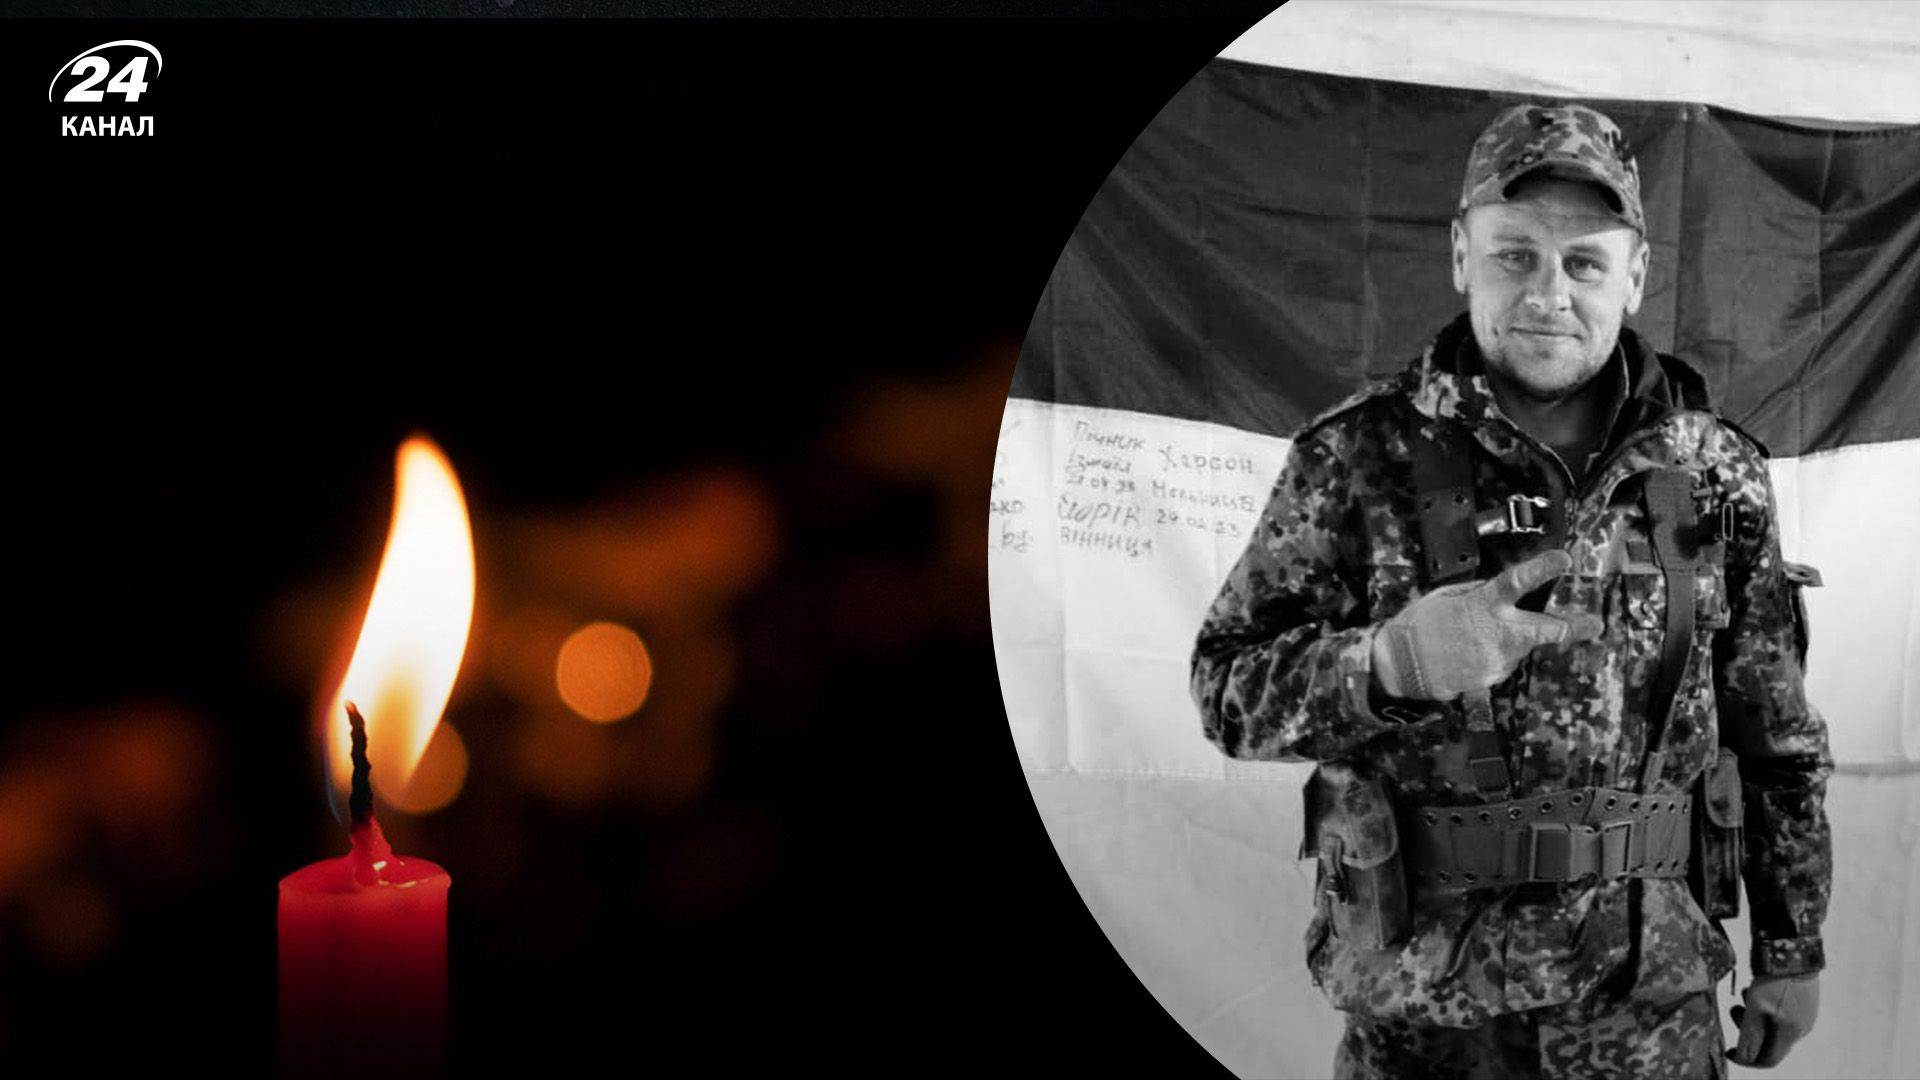 Потери Украины в войне - погиб выпускник Харьковского университета Сковороды - 24 Канал